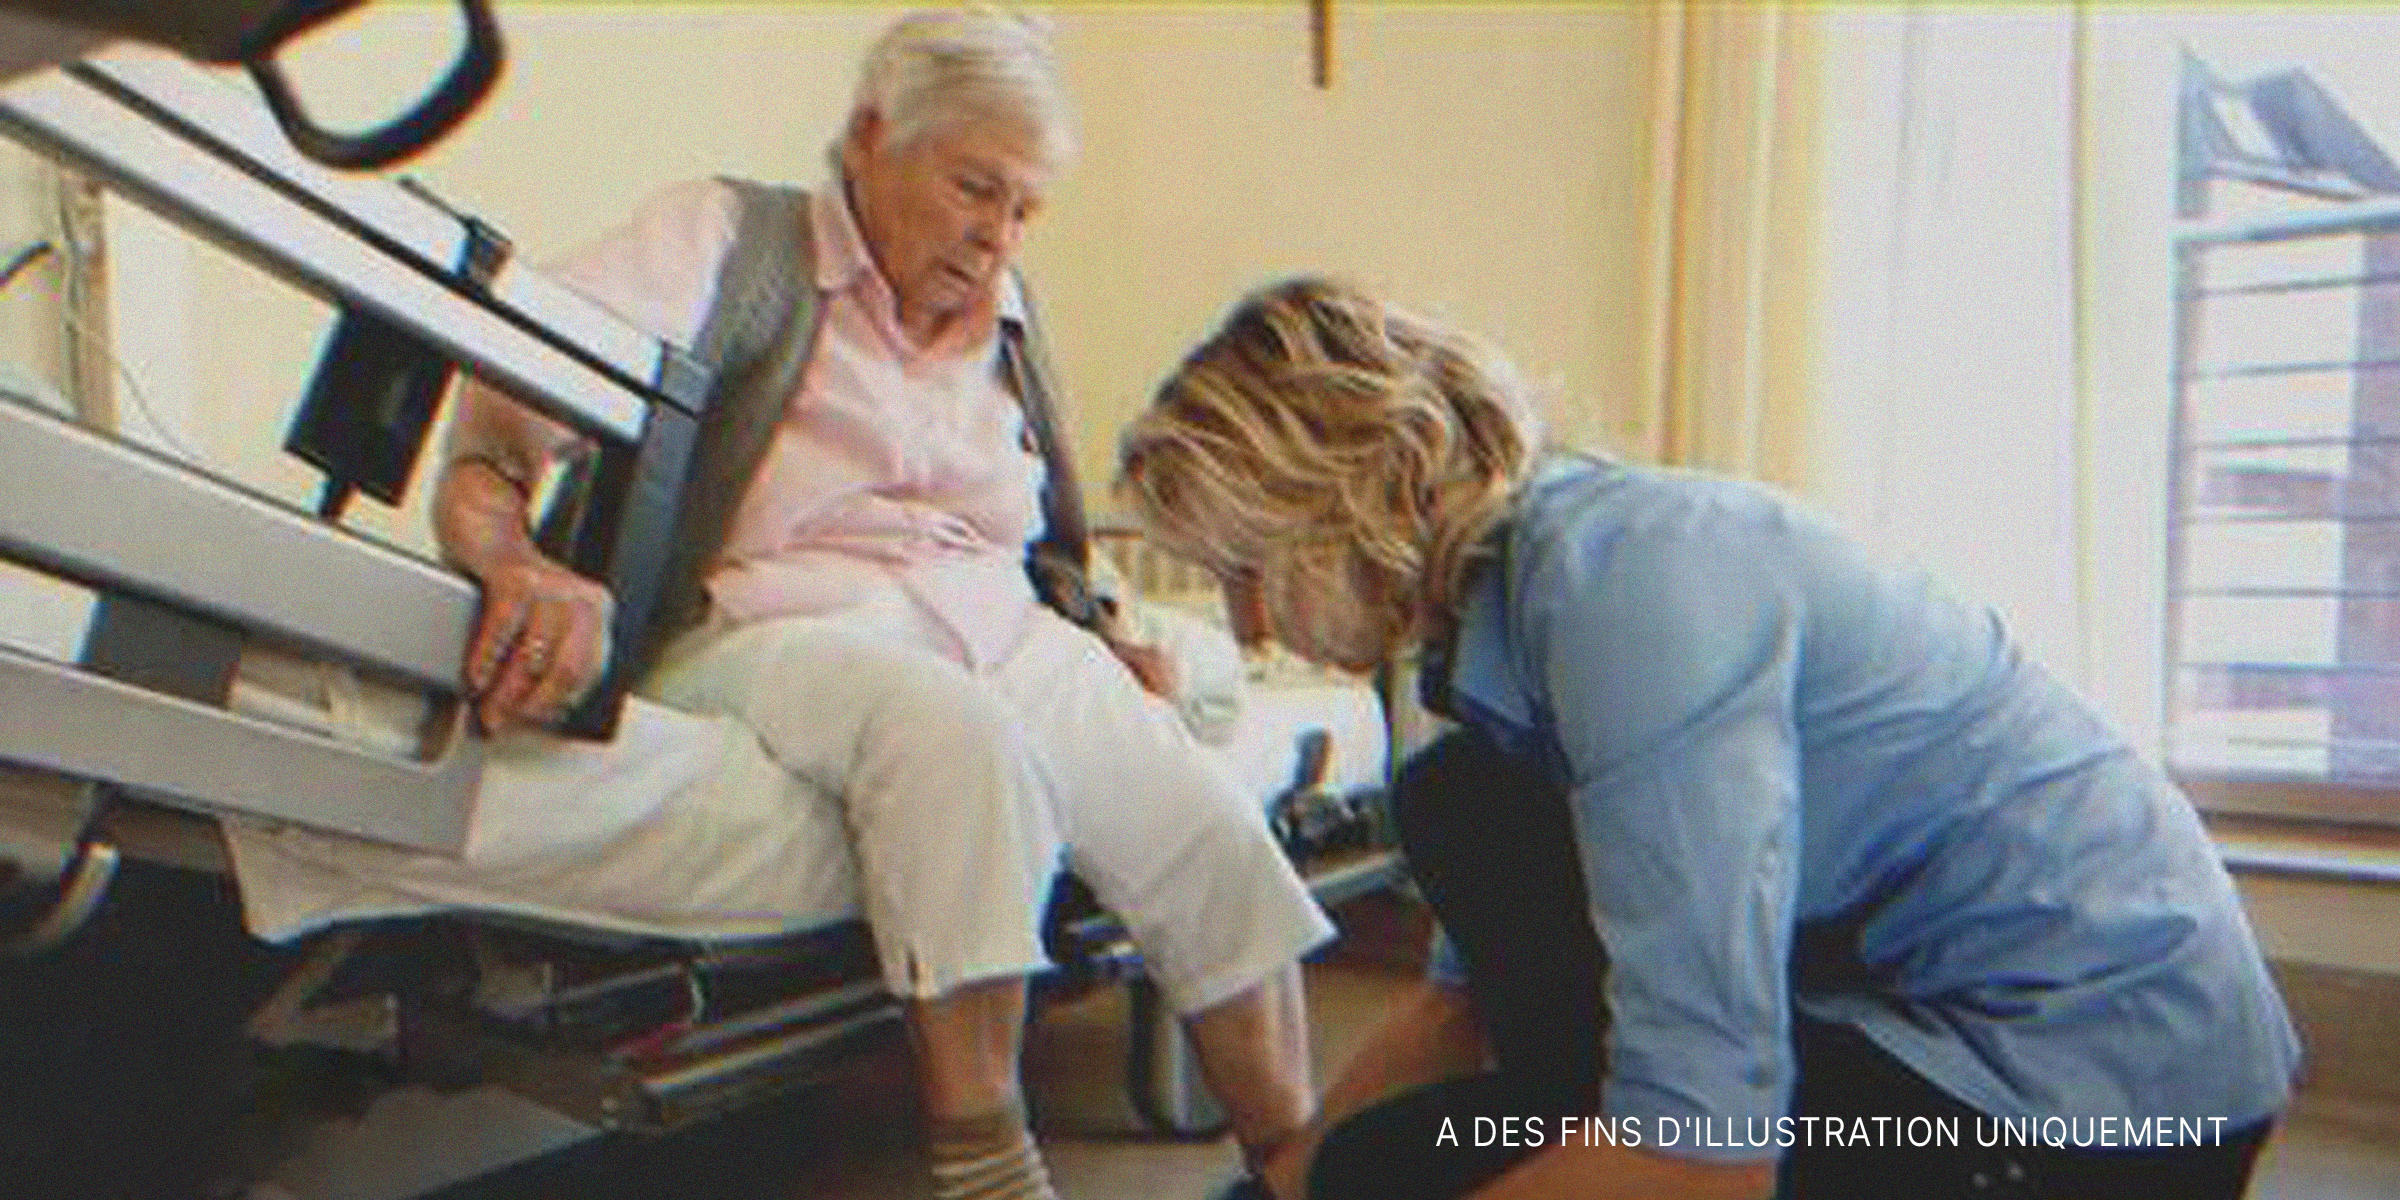 Une femme s'occupant des pieds d'une autre plus âgée | Source : Getty Images